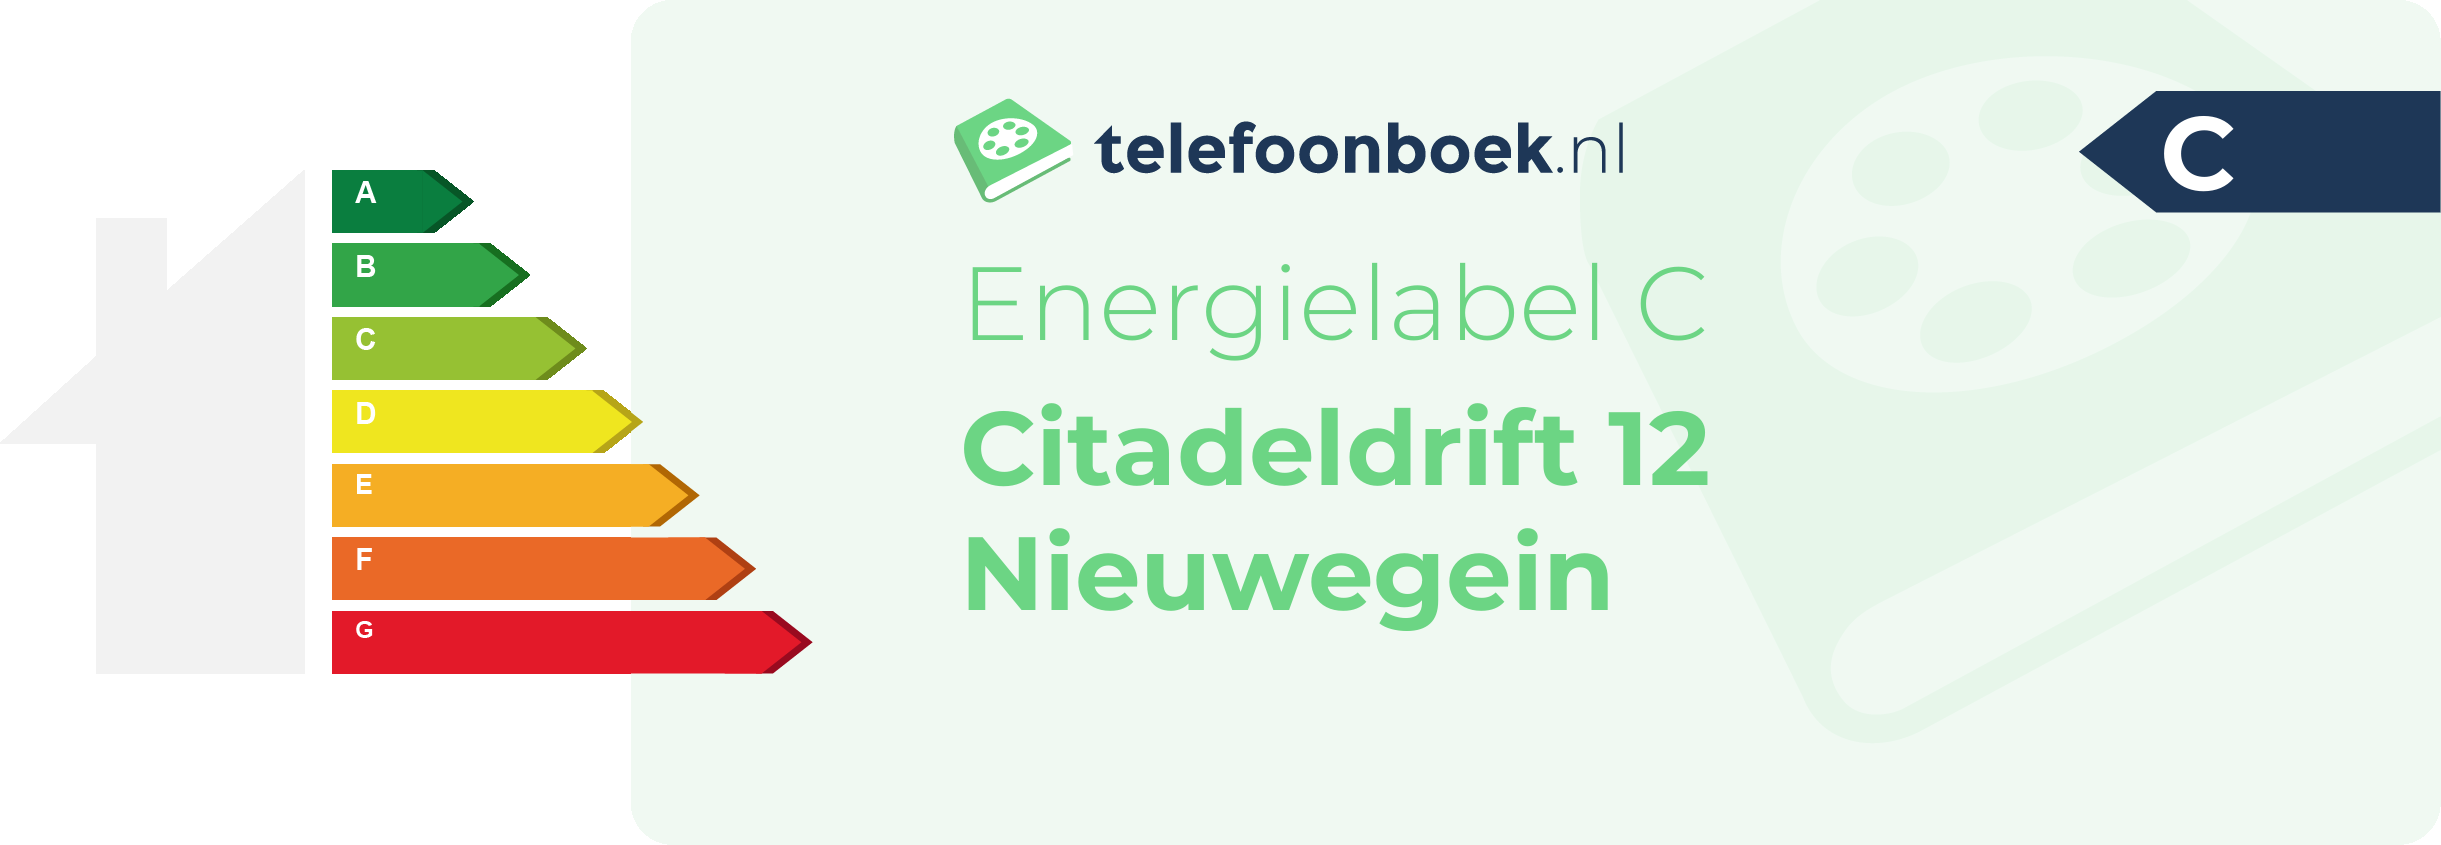 Energielabel Citadeldrift 12 Nieuwegein